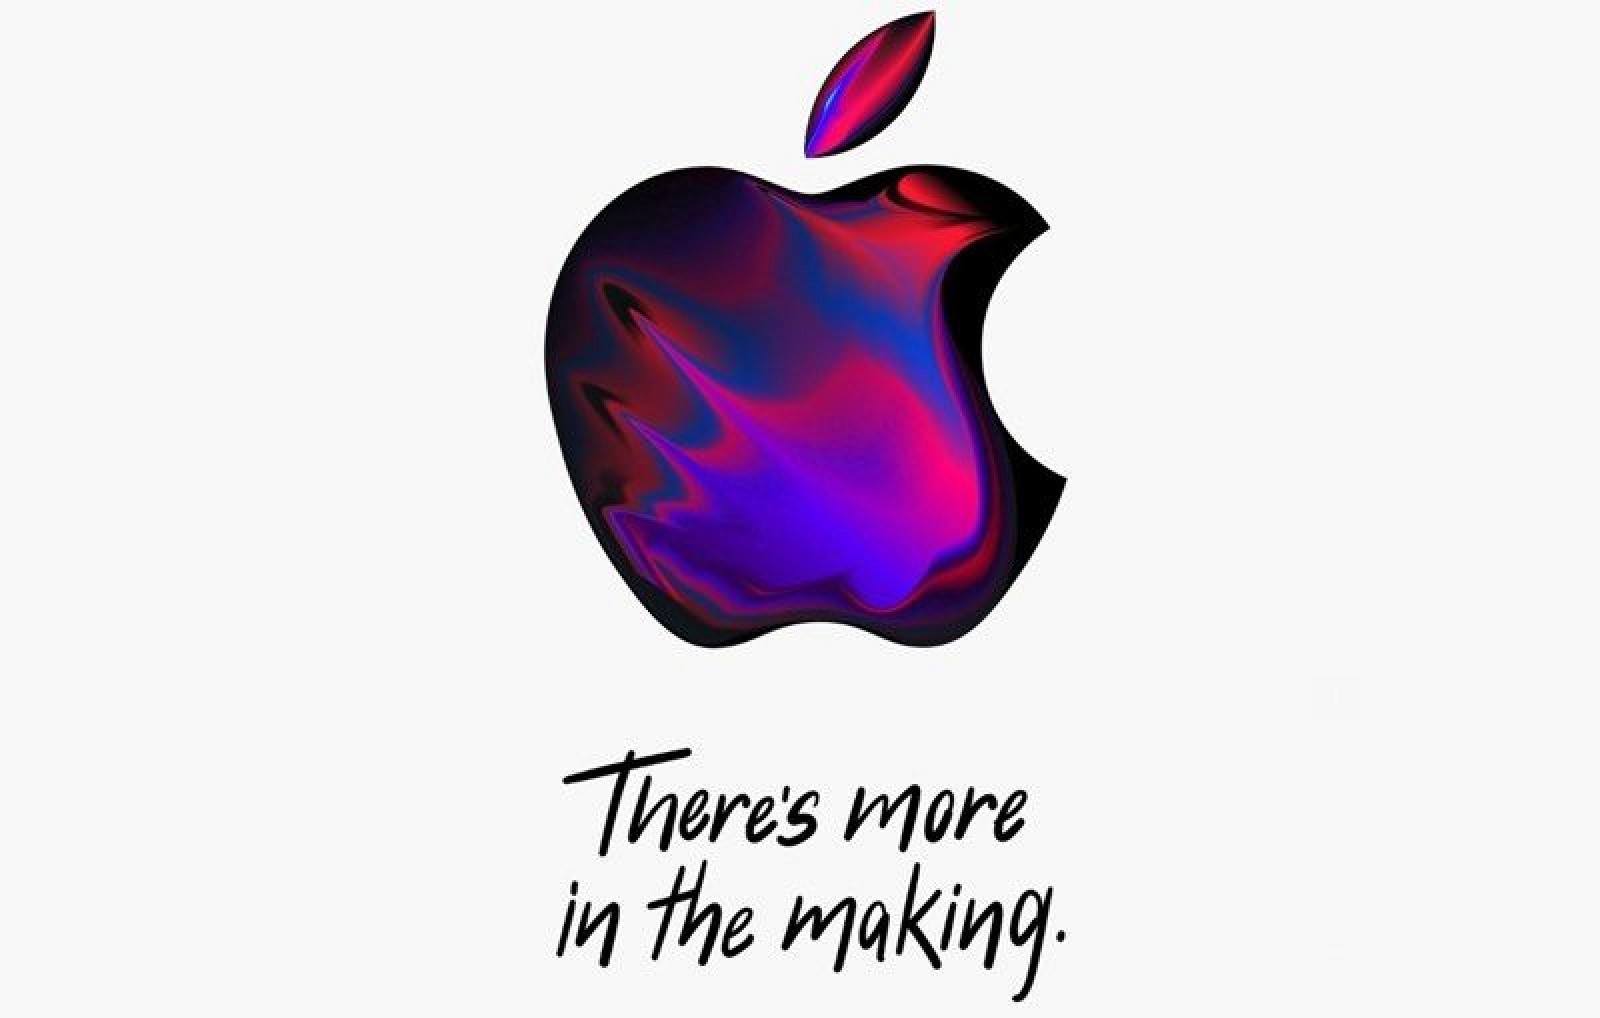 Il 30 Ottobre Apple presenterà i nuovi iPad e Mac a New York 2